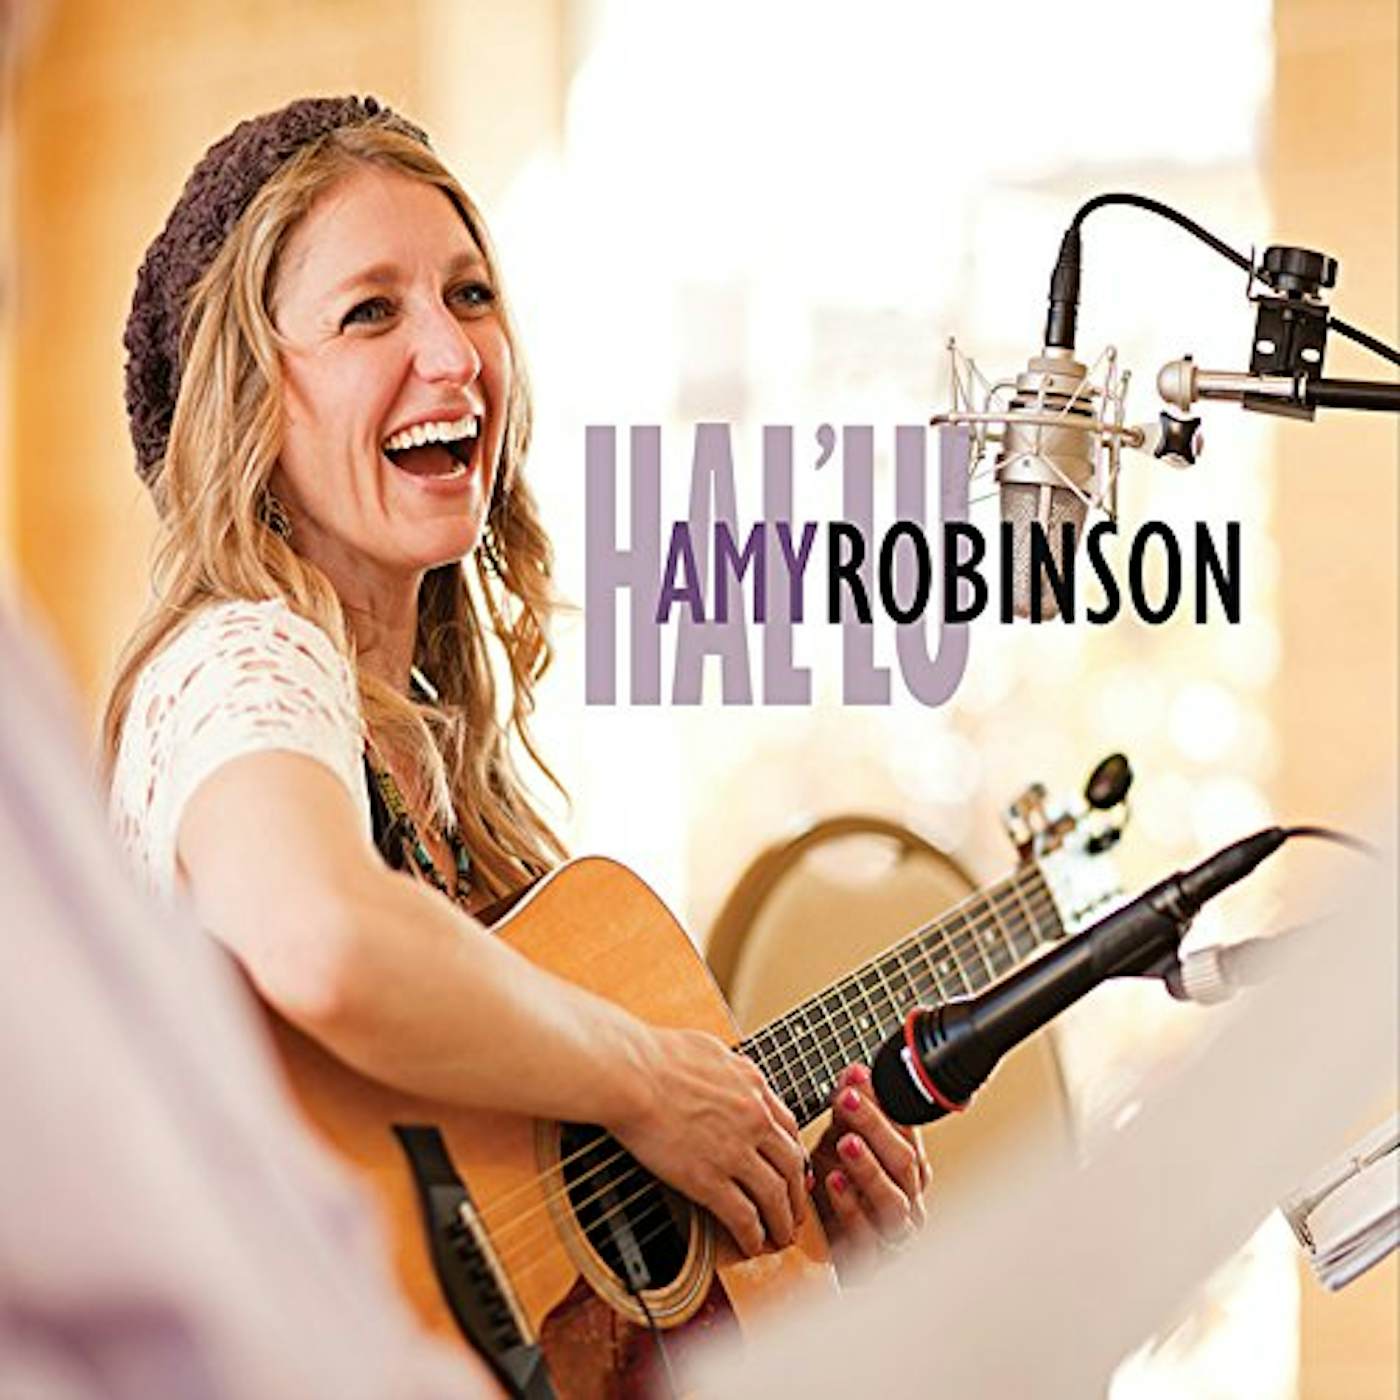 Amy Robinson HAL'LU CD